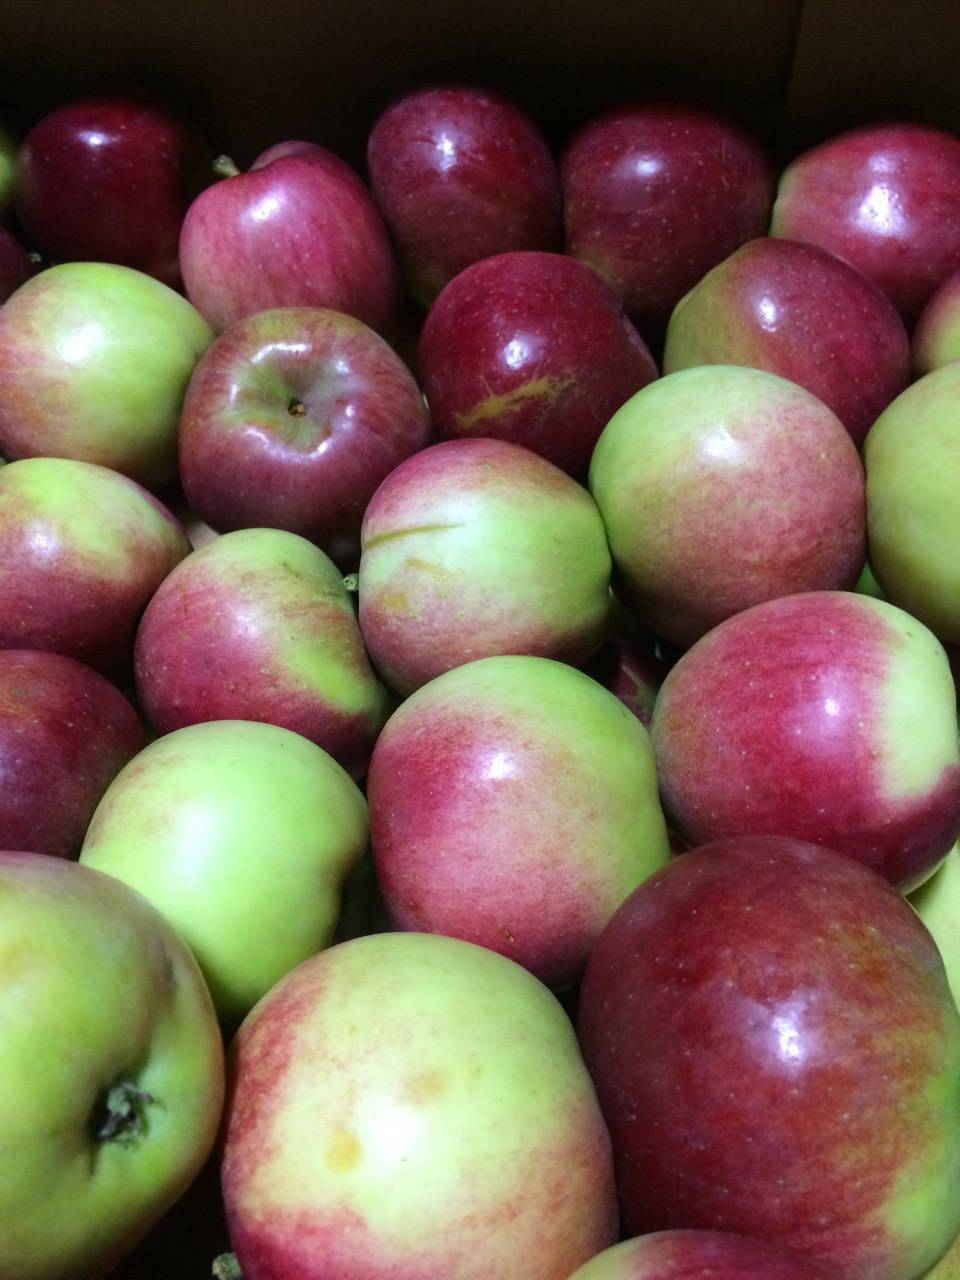 Яблоня белорусское сладкое: характеристики сорта и 10 рекомендаций по правильному выращиванию